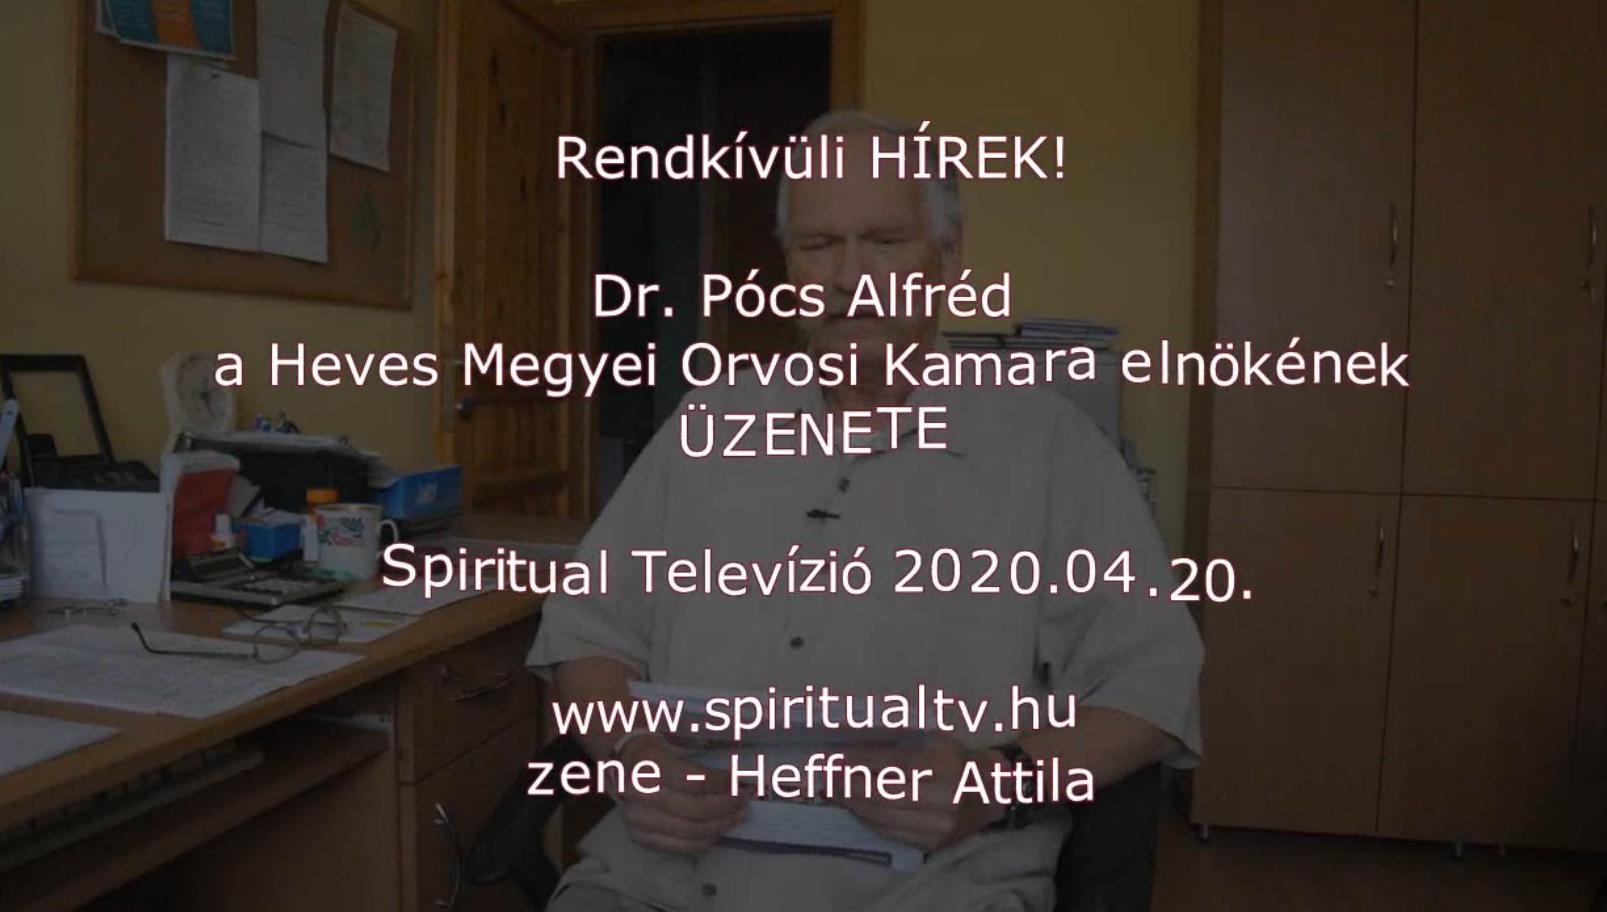 www.spiritualtv.hu 2020.04.20.